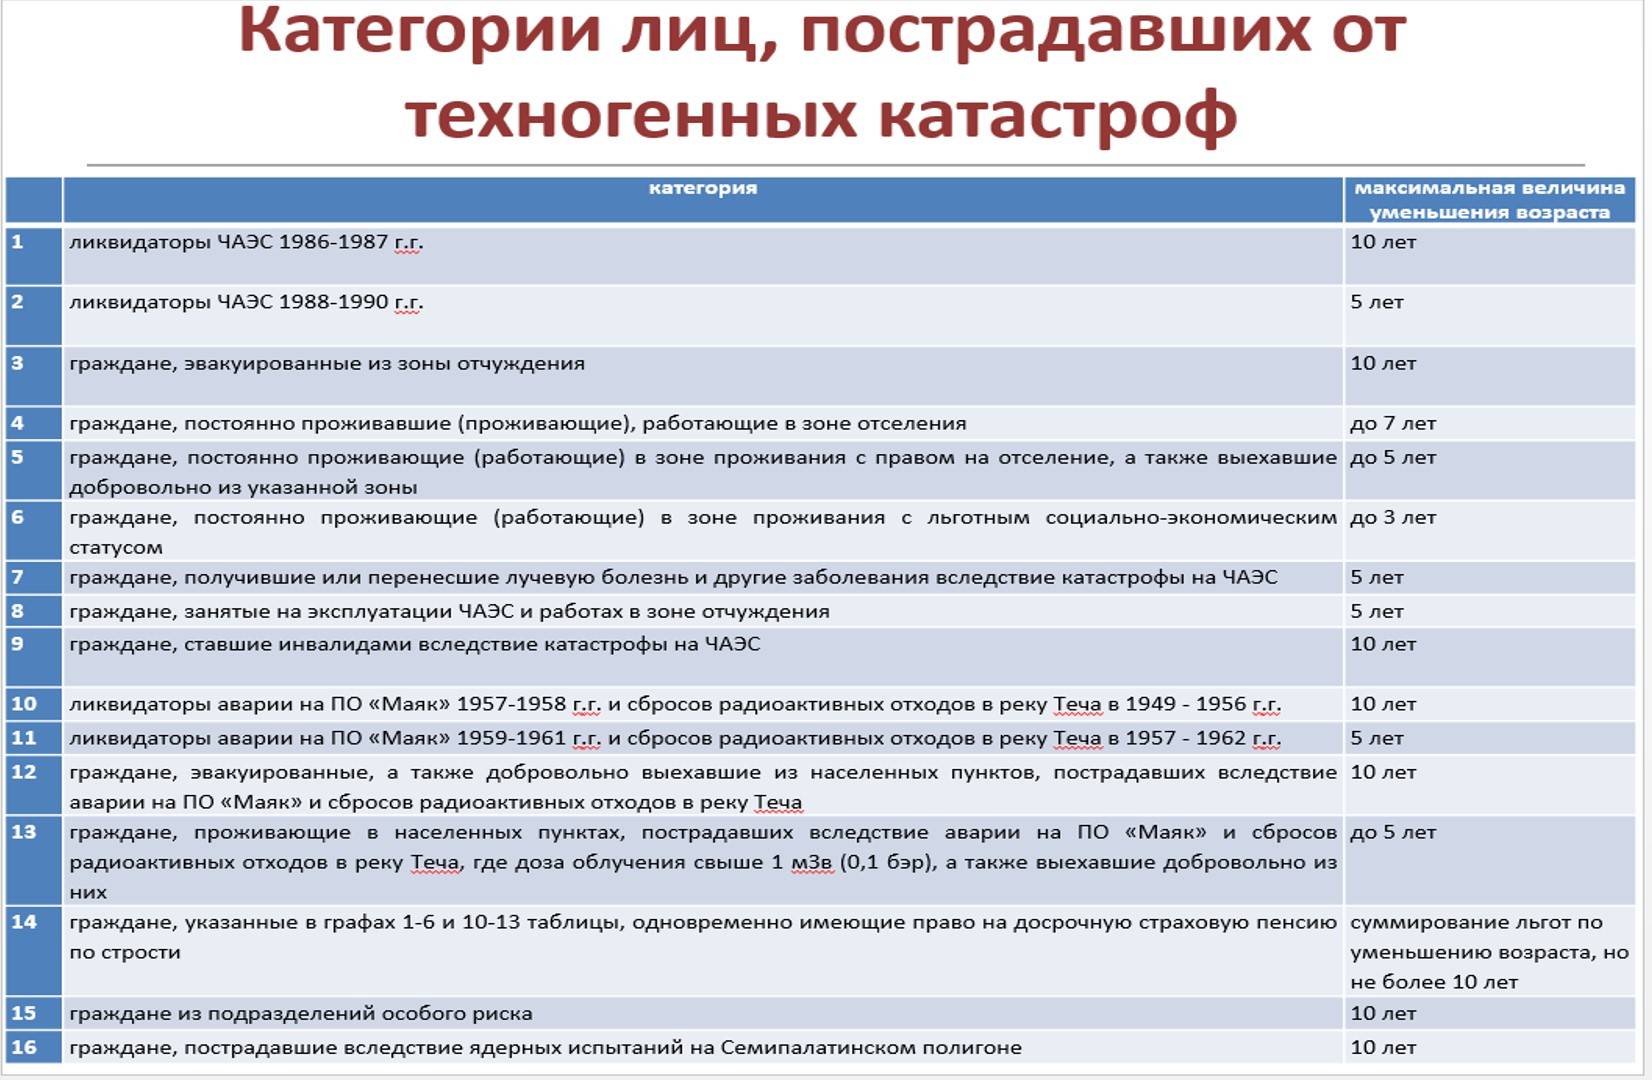 Пенсия чернобыльцам в 2020 году: размер, будет ли повышение, правила выплат